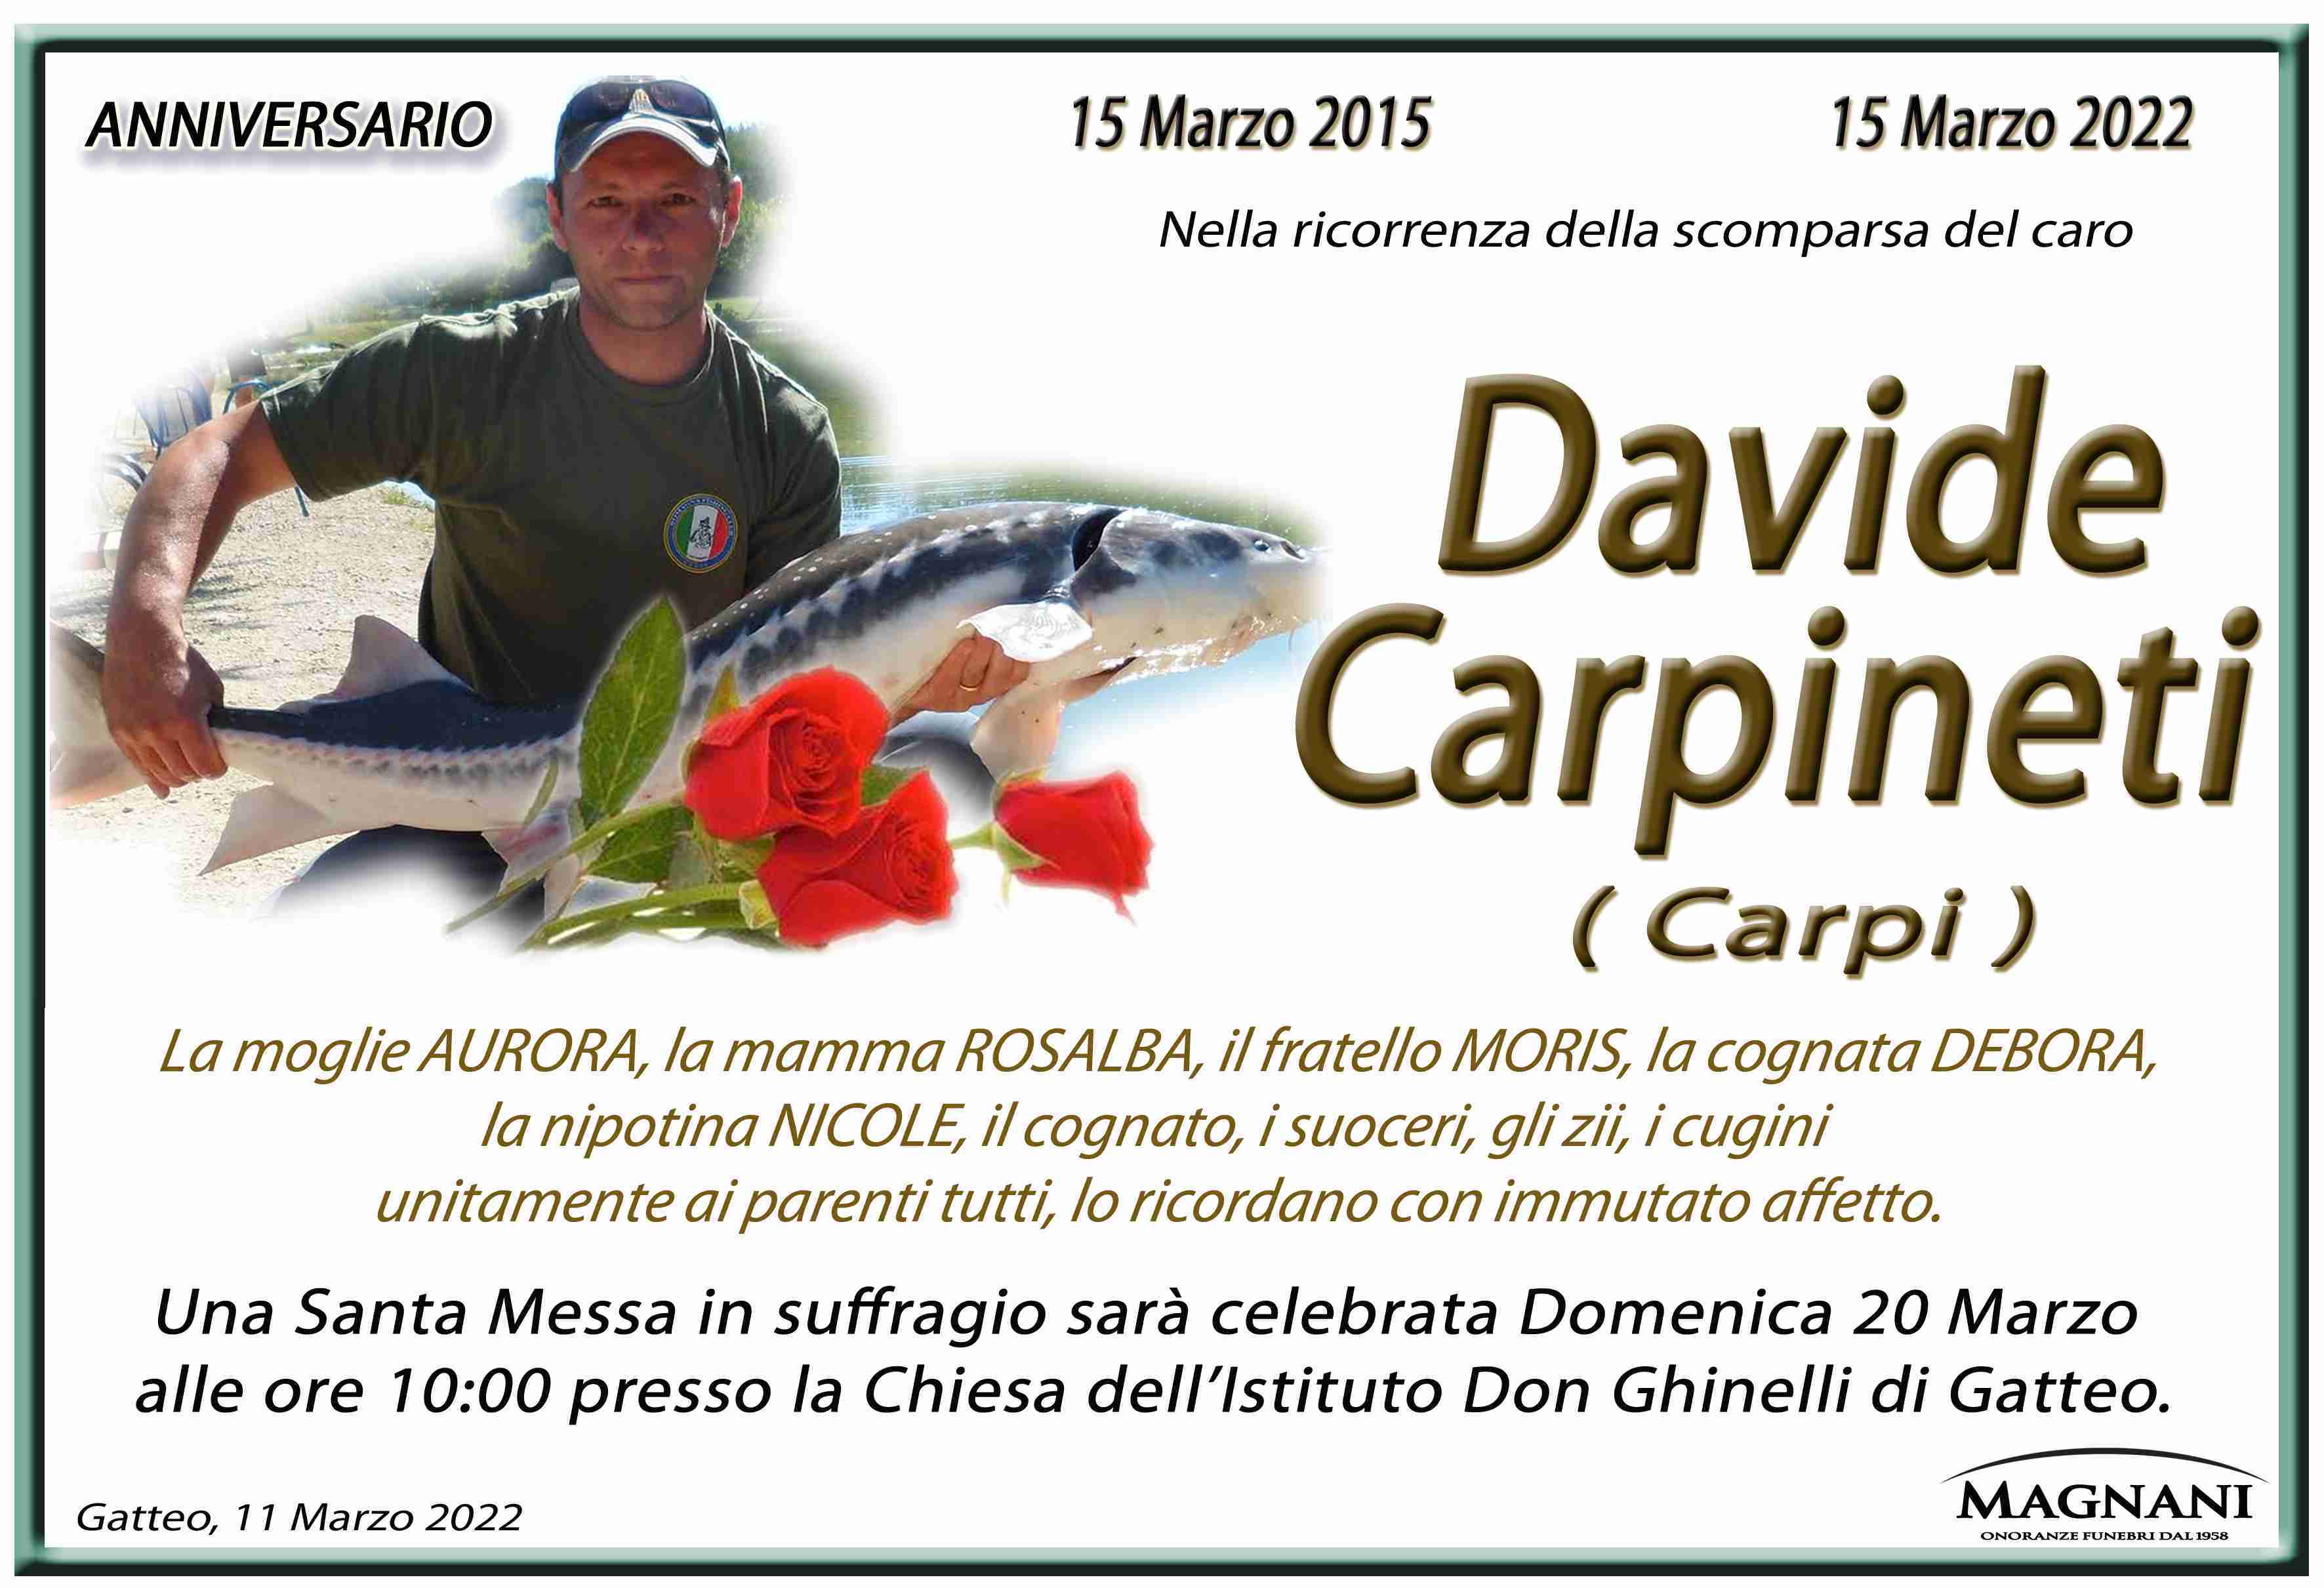 Davide Carpineti